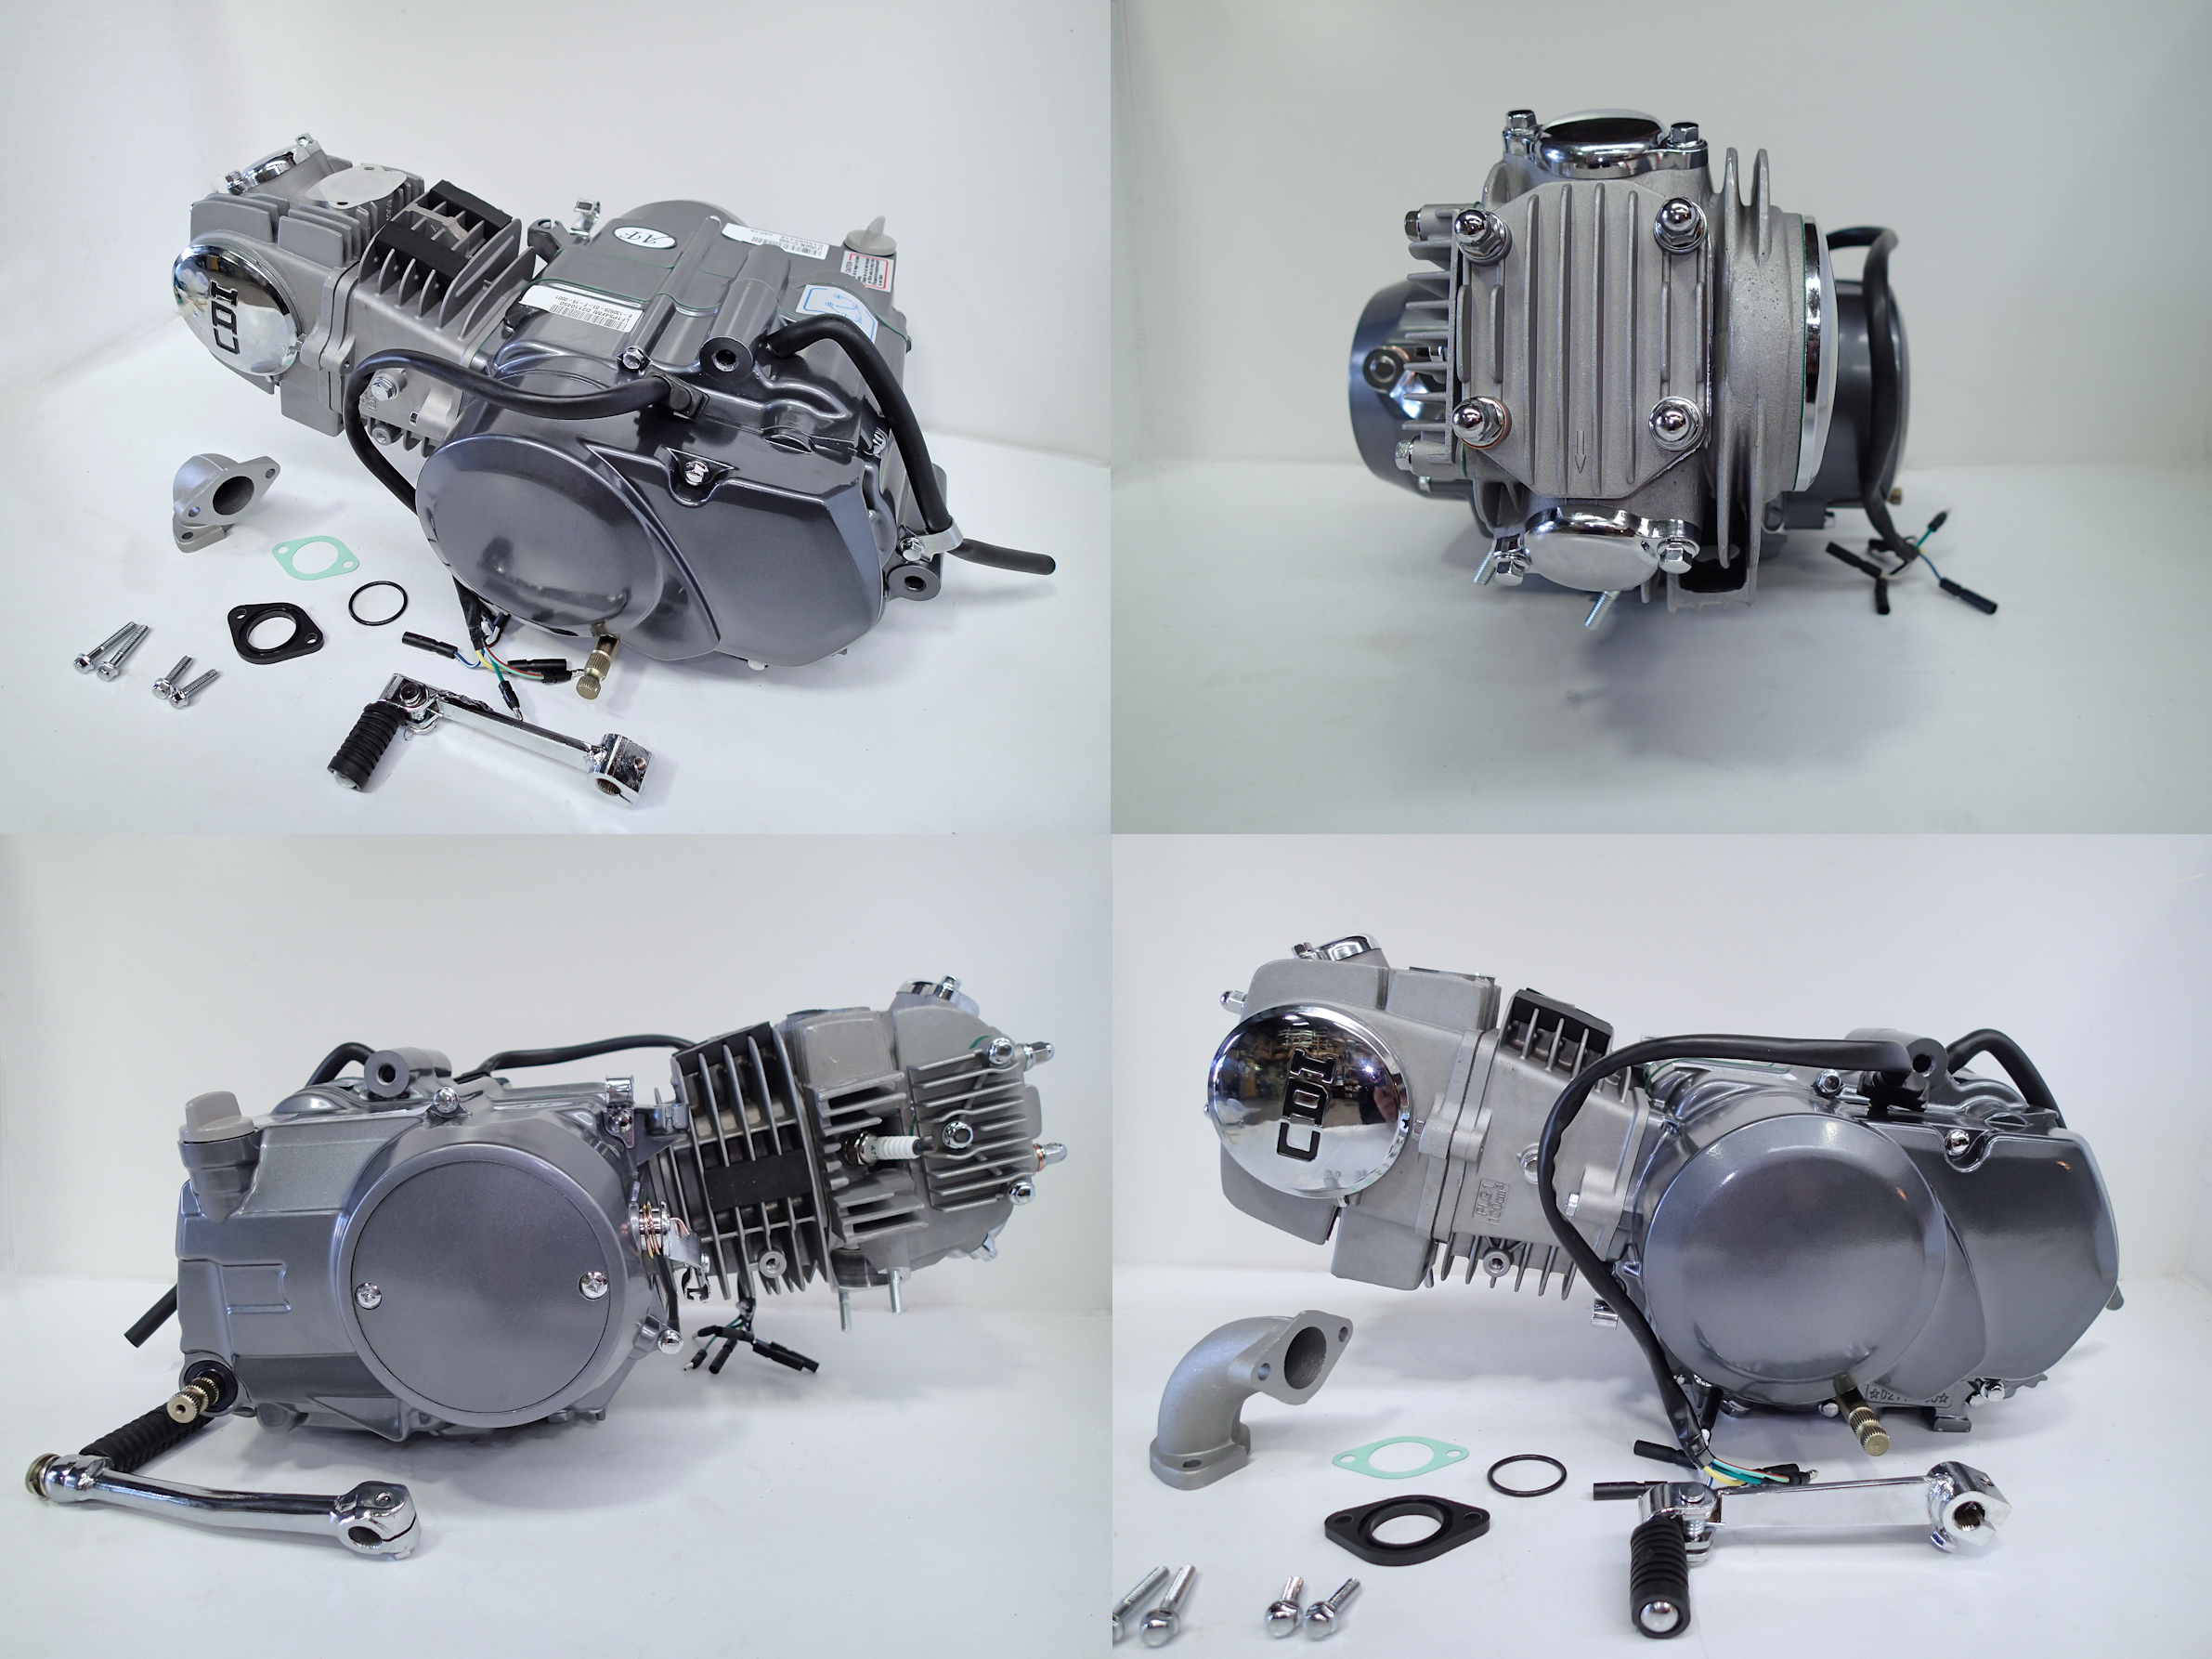 Lifan KTX125cc 5 speed manual engine - kick start